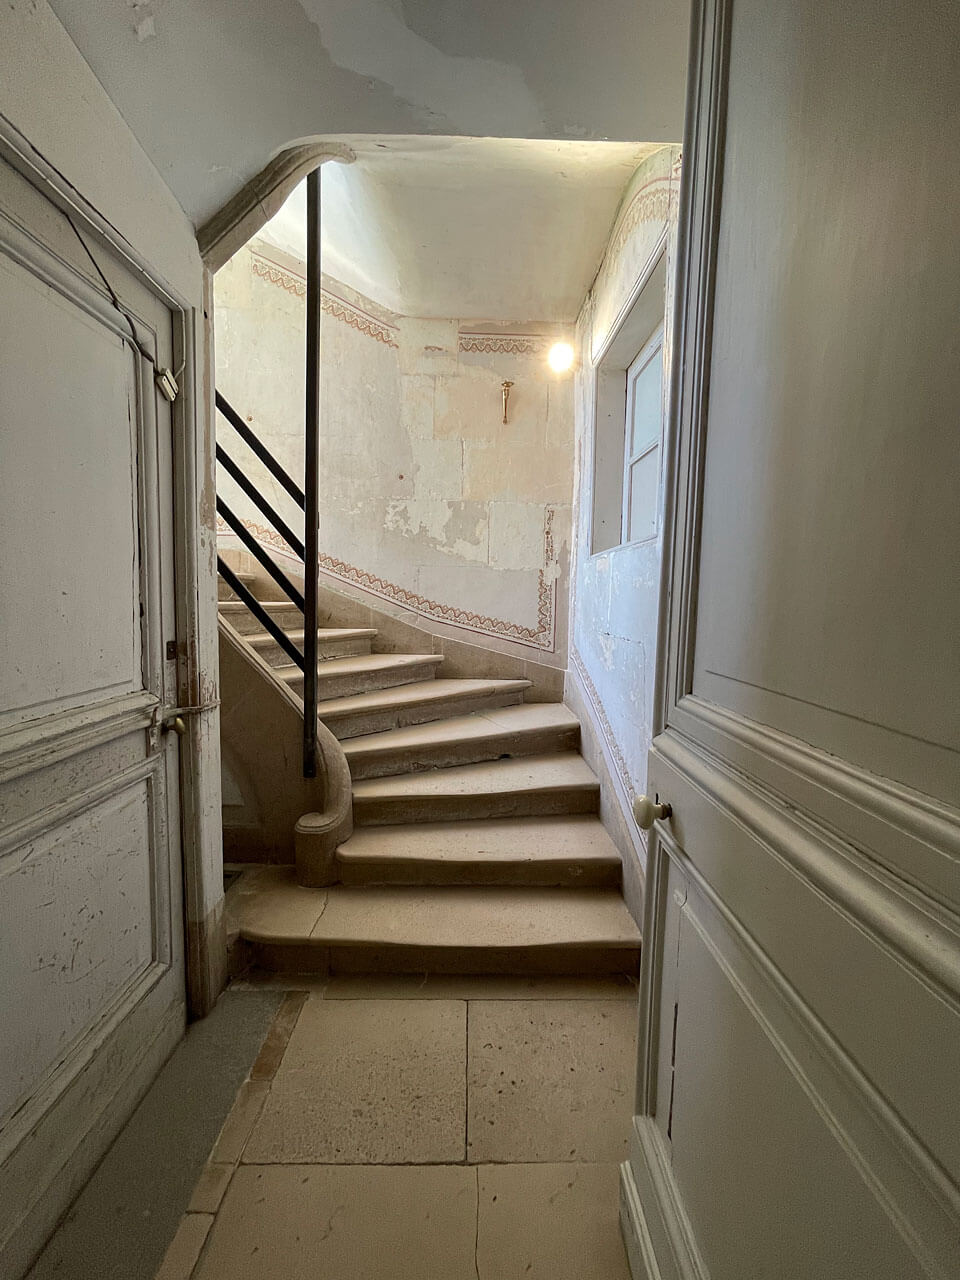 Escalier du château de Valençay (41).